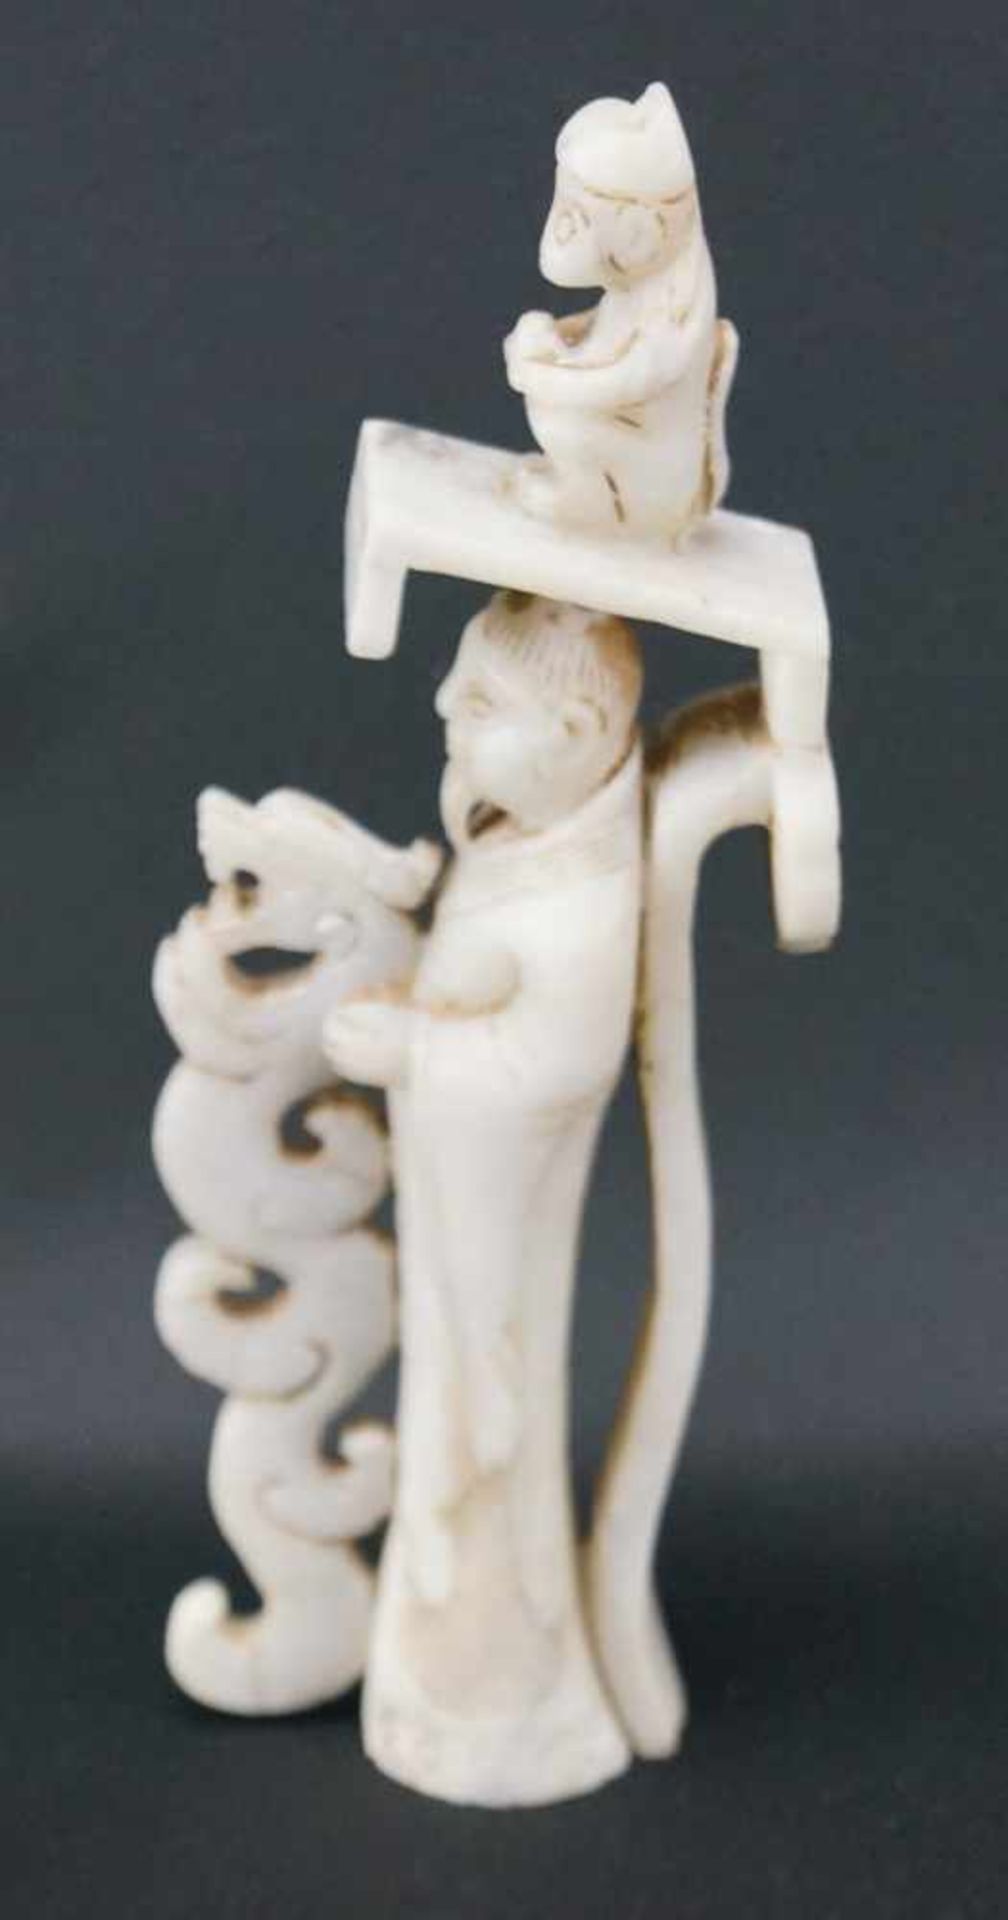 JadefigurWeiße Jade, Darstellung eines Weisen mit Drachen und Affe, Höhe 18 cm x Breite 7 cm, in - Image 3 of 10